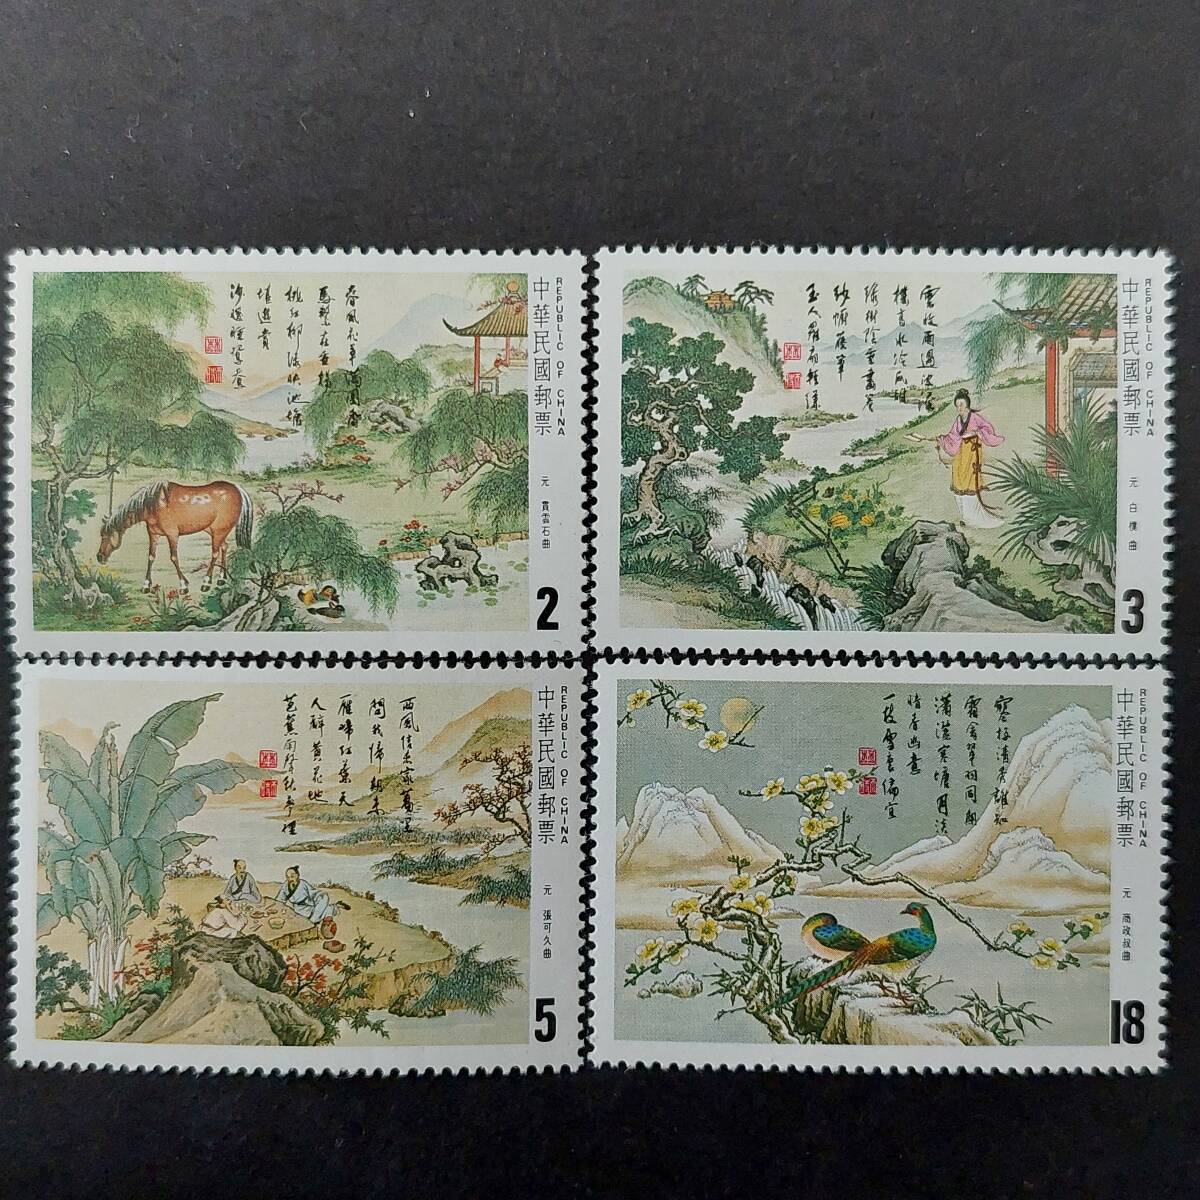 J480 Китайские марки Тайвань Выпущено "Китайская классическая лирика и почтовые марки Юань Сун 3-го бюро (Гуаньюнь Ши Сон, Бай Чжу Сон, Чжан Кэ Ку Сон, Шан Чэн Сун 4 типа) 4 типа" Выпущено в 1984 г. Не используется